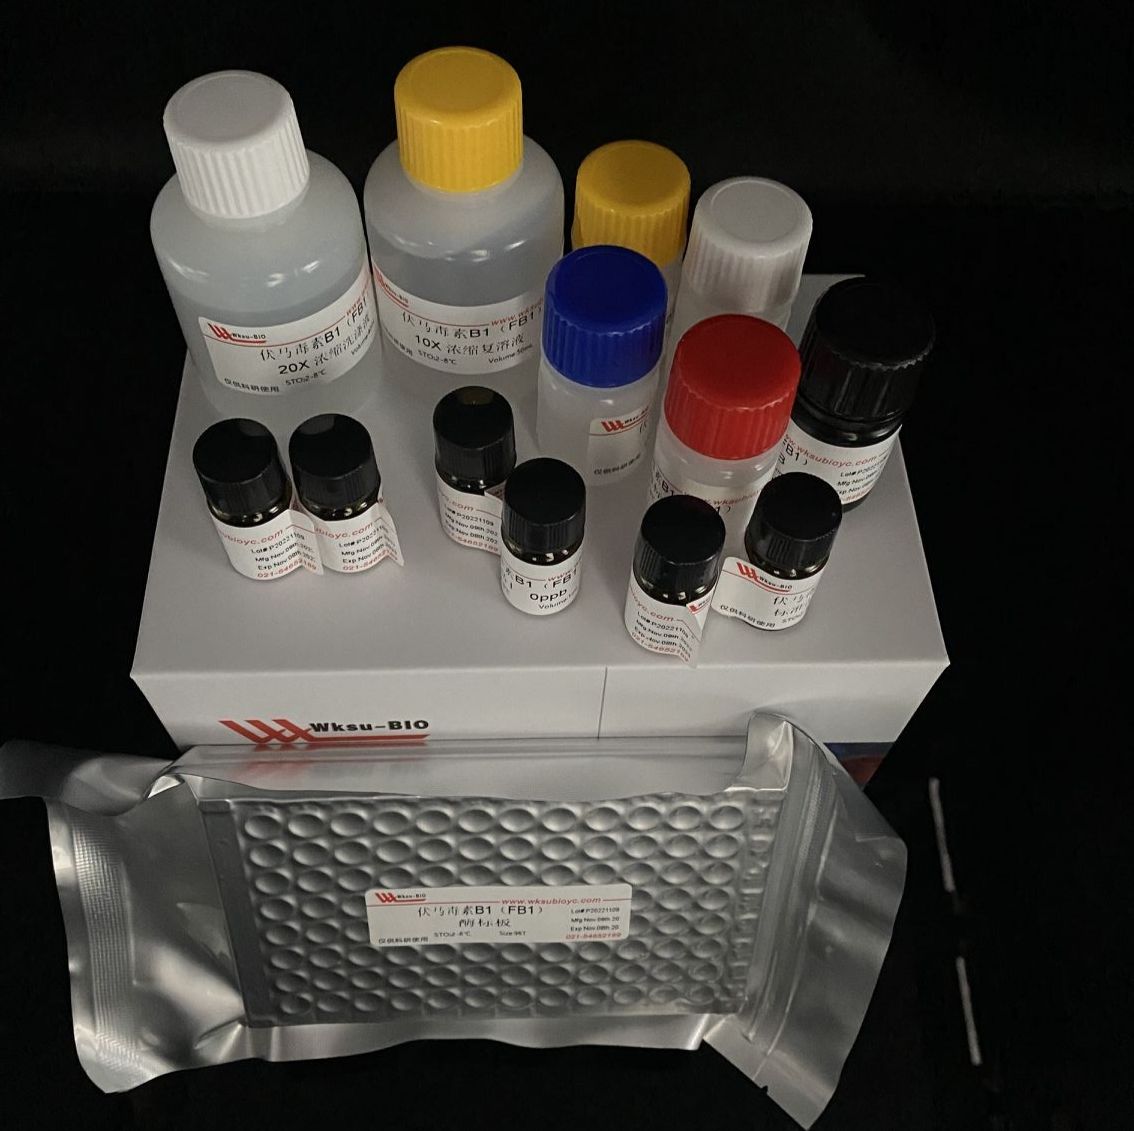 土壤漆酶(S-Lac)活性检测试剂盒,微板法